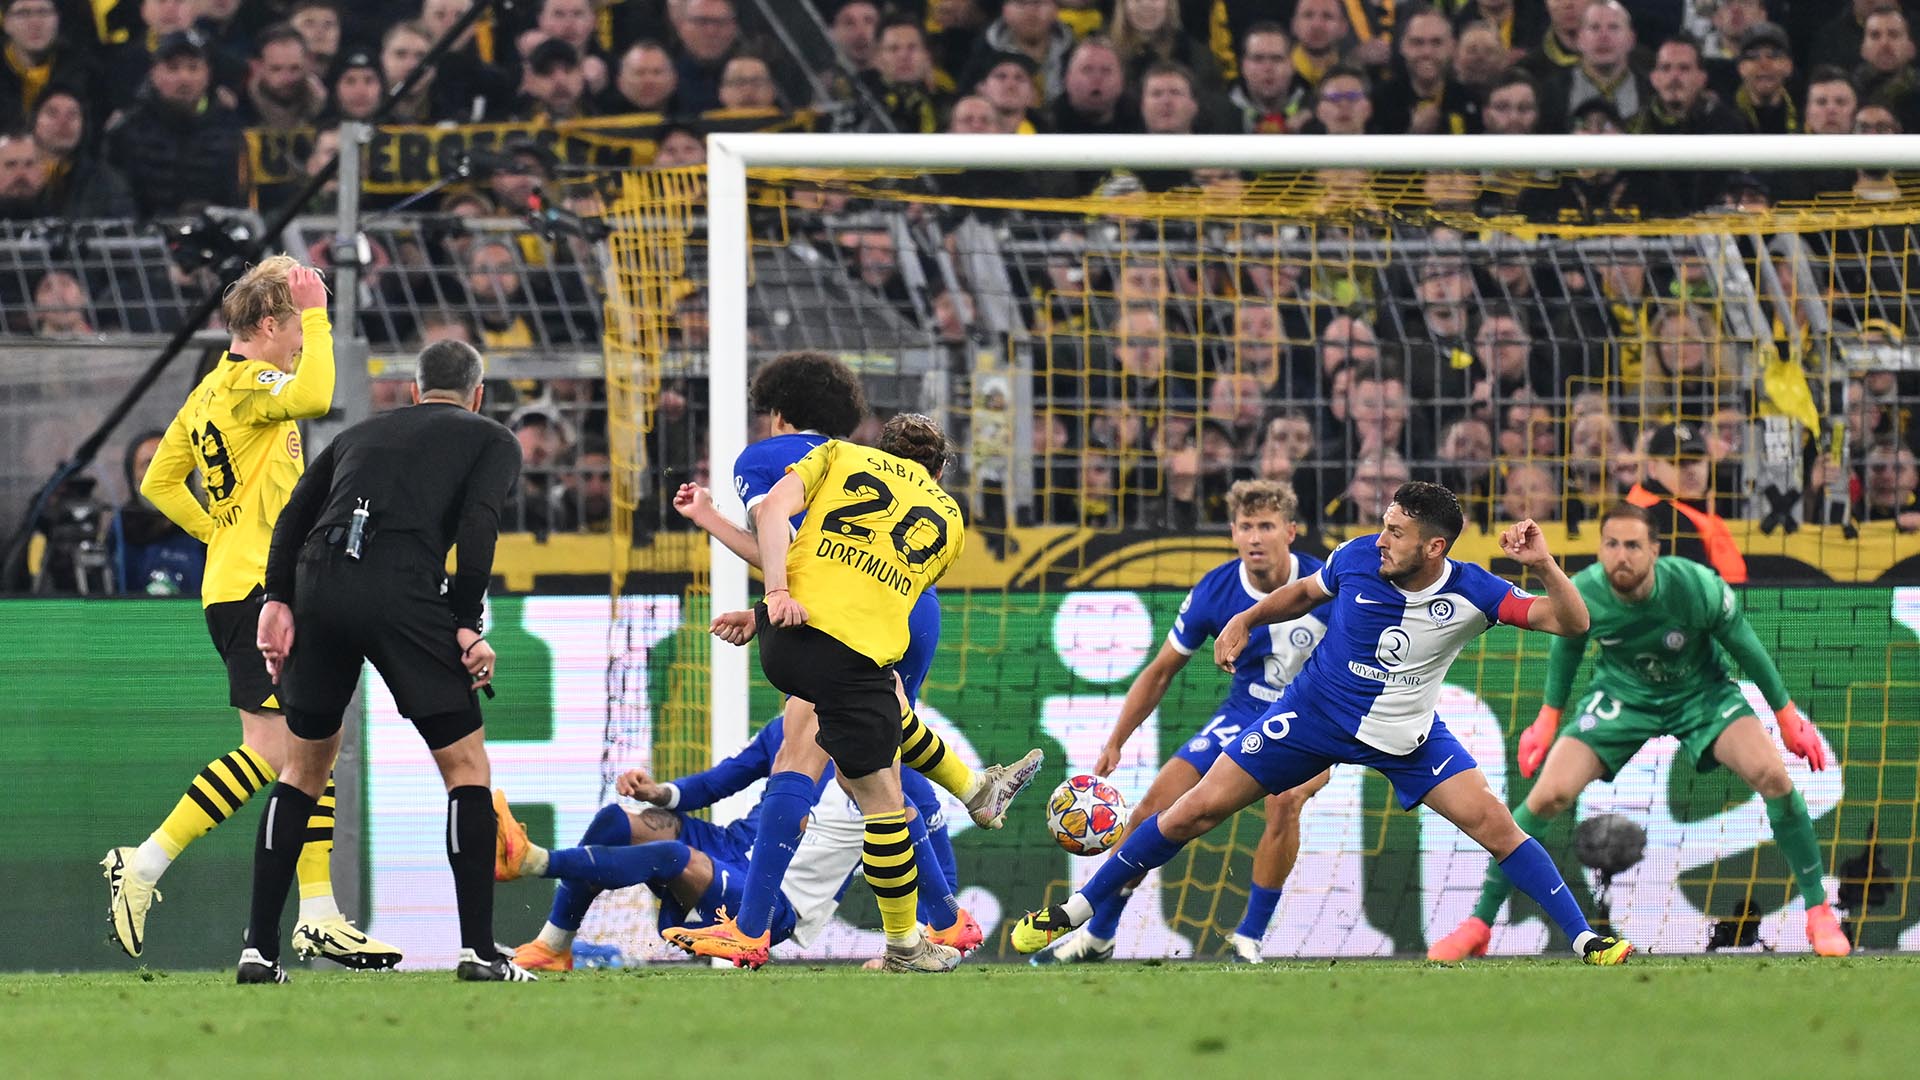 Dortmund 4-Atlético 2 (Brandt 34’; Maatsen 39’; Hummels 49’ pp; Correa 64’; Füllkrug 71’; Sabitzer 74’). El infierno del Muro Amarillo devoró al Atleti y llevó en volandas al Dortmund, que demostró fuerza titánica para levantarse tras el 2-2 de Correa.